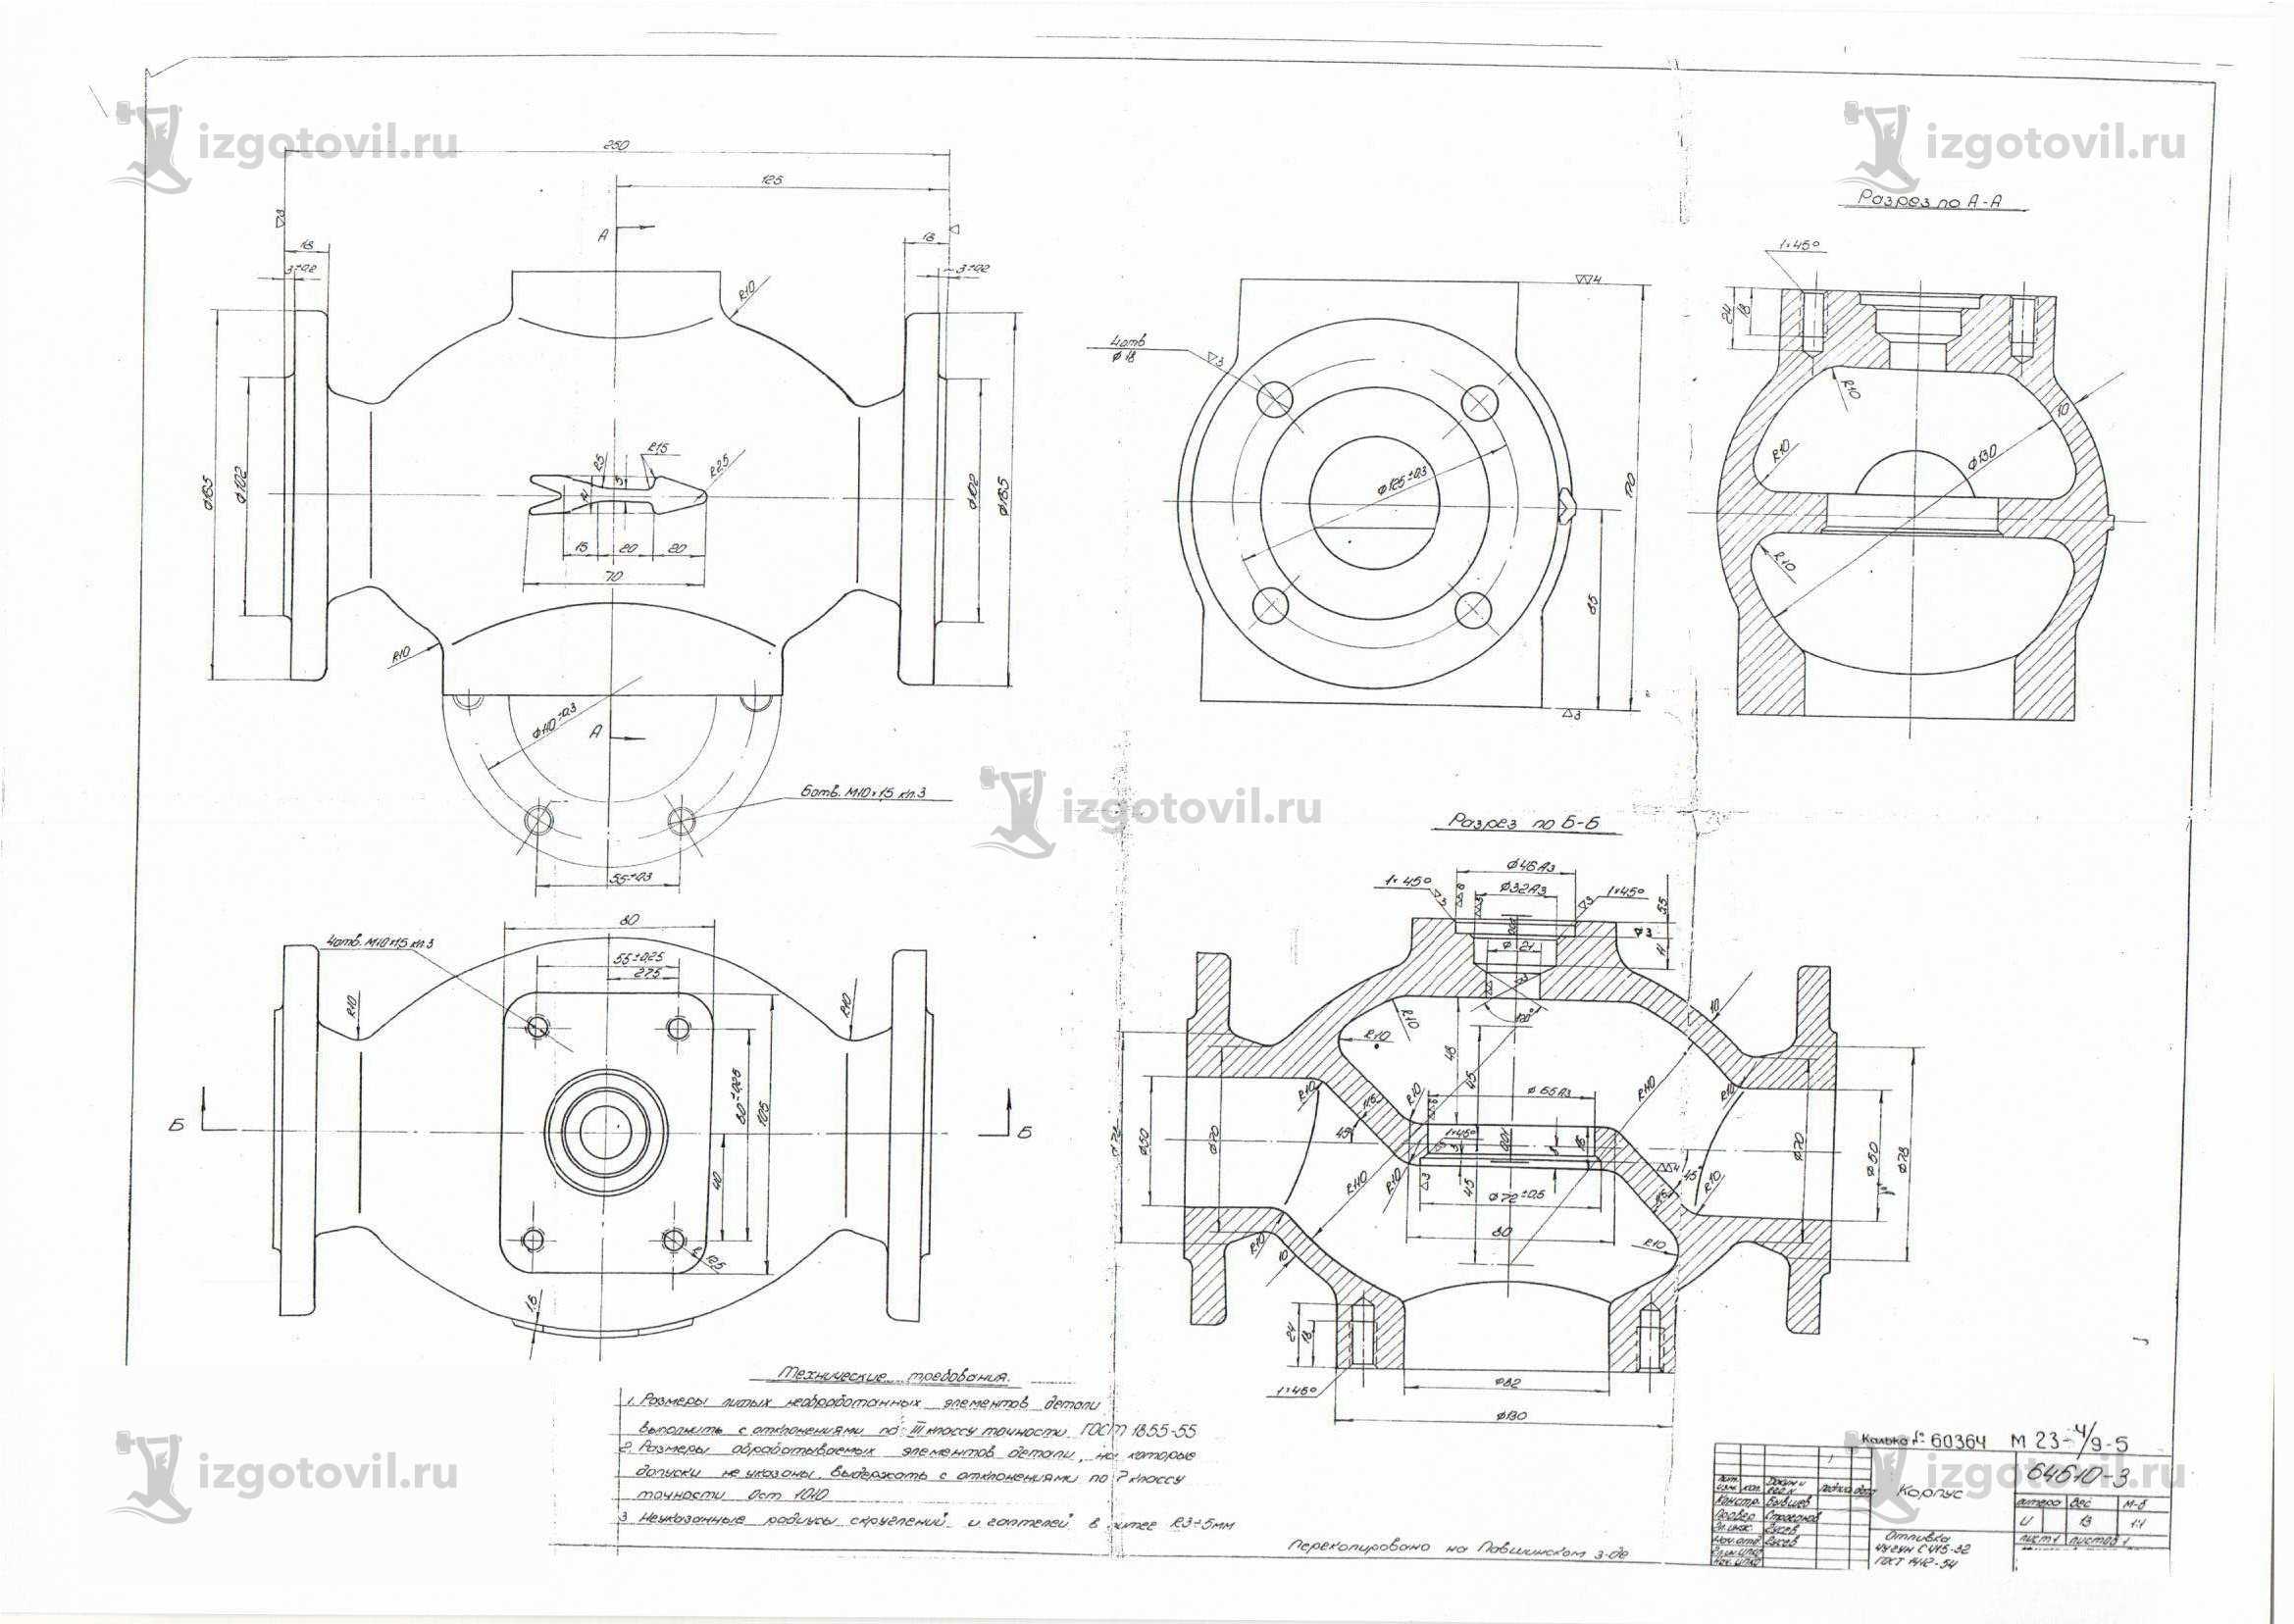 Изготовление деталей по чертежам (диск, тройник, рычаг, сопло, корпус подшипника).